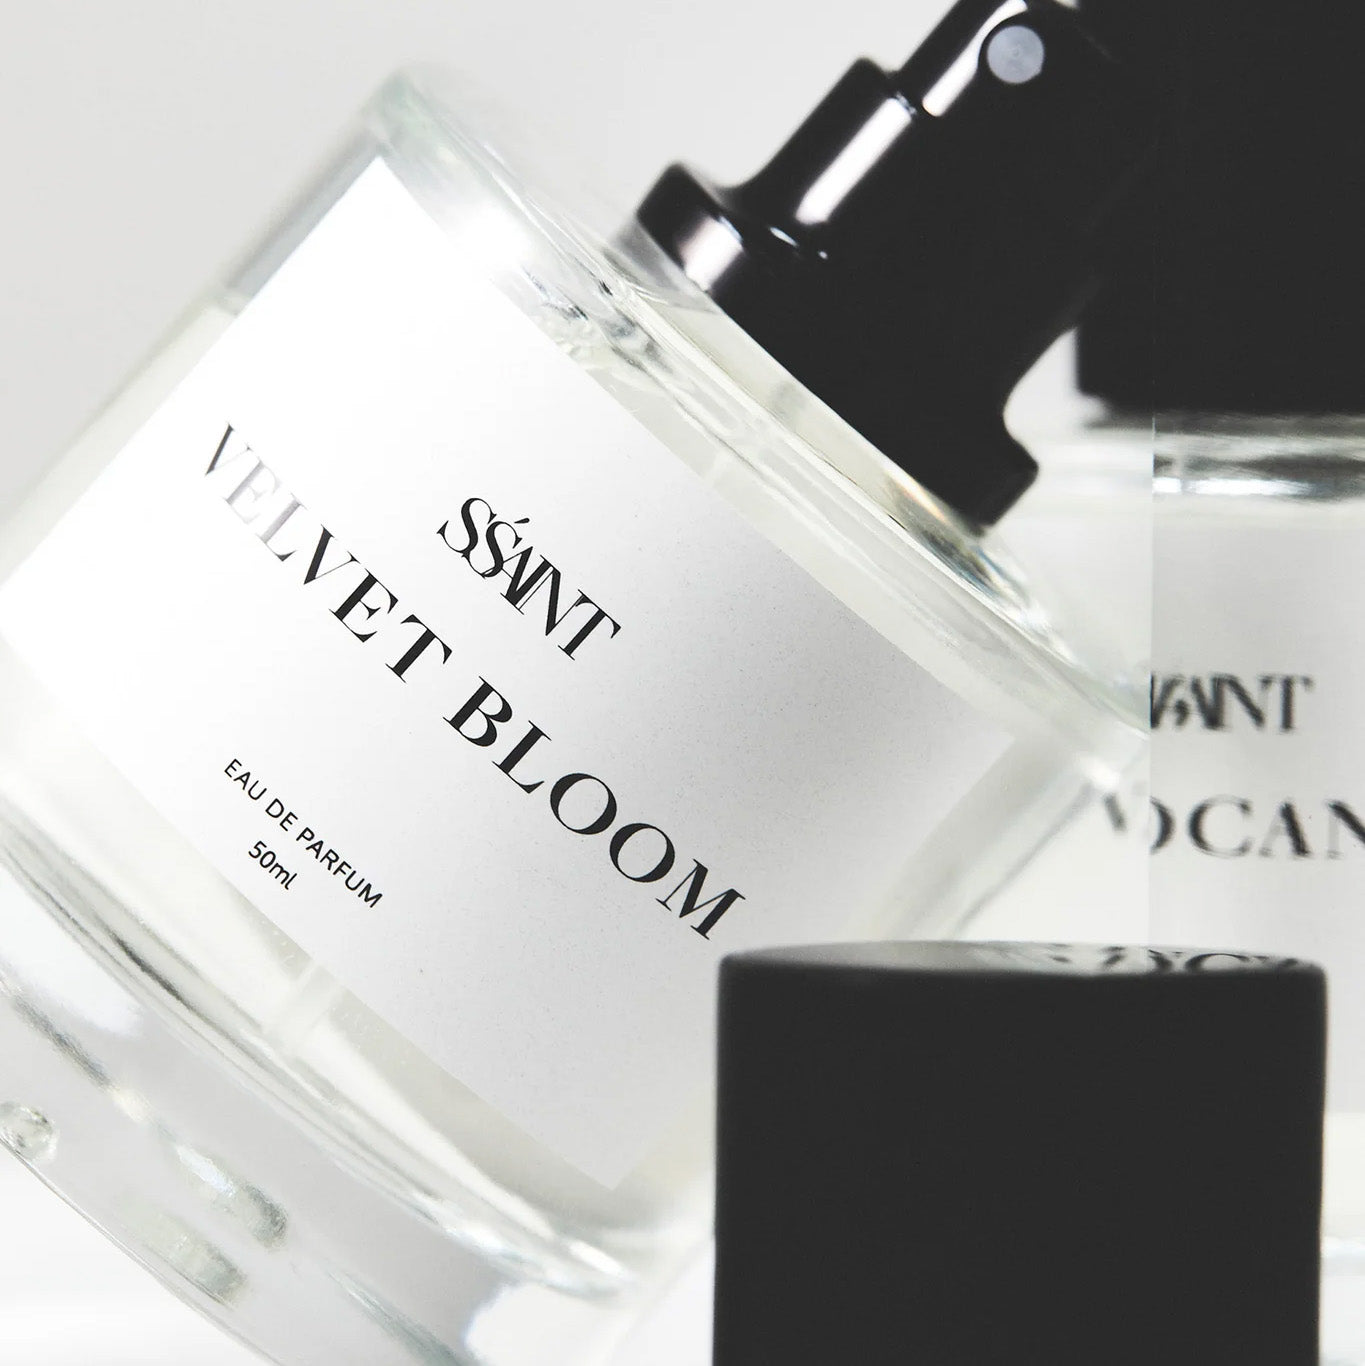 SŚAINT Parfum Velvet Bloom